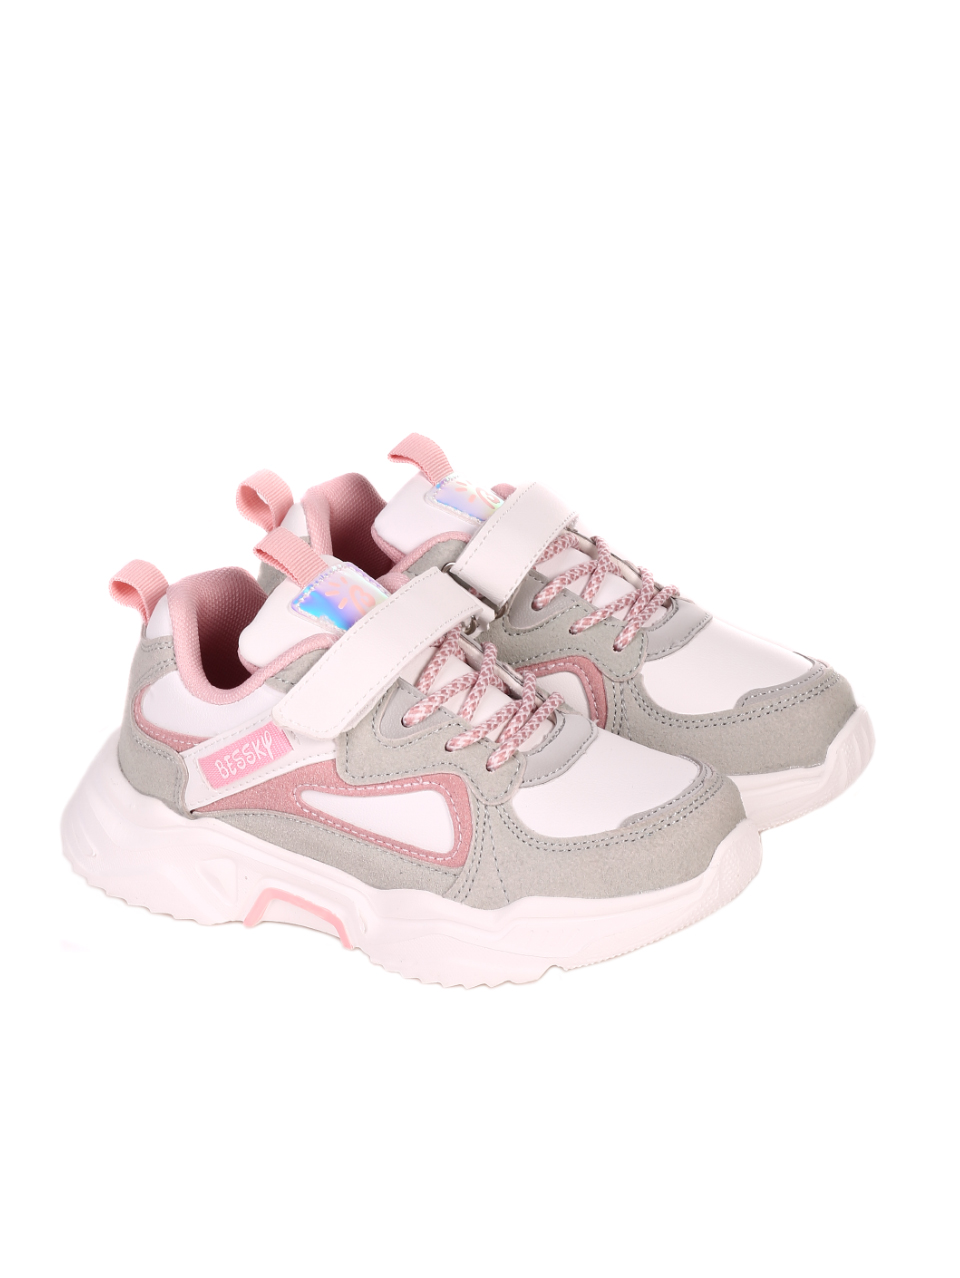 Ежедневни детски обувки в бяло и розово 18P-21082 white/pink